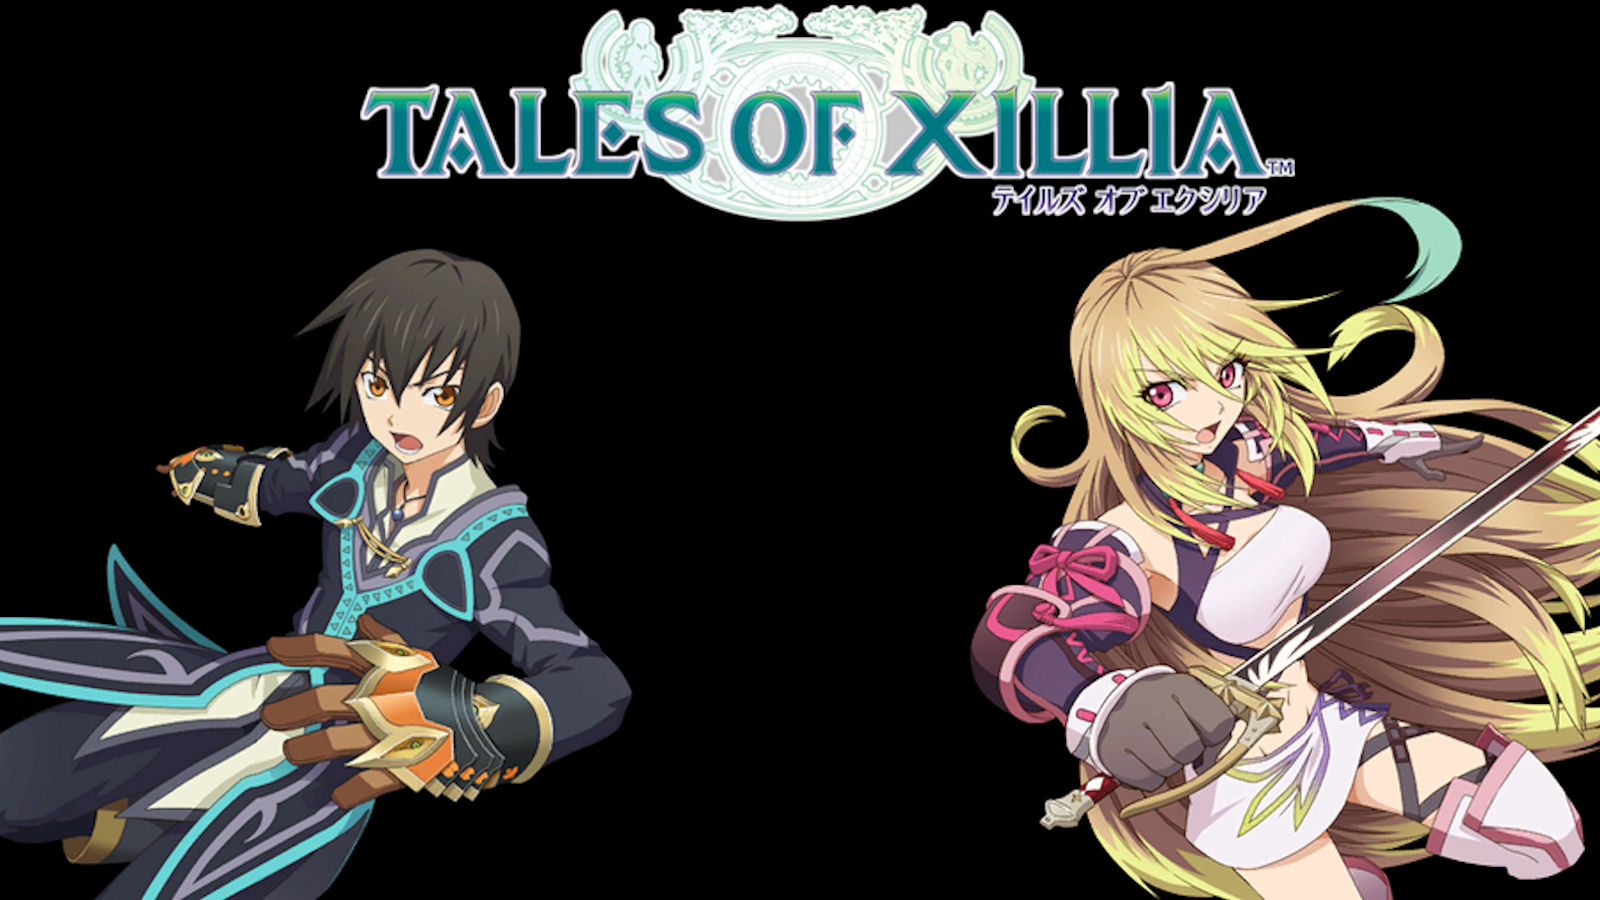 Tales of xillia logo wallpaper